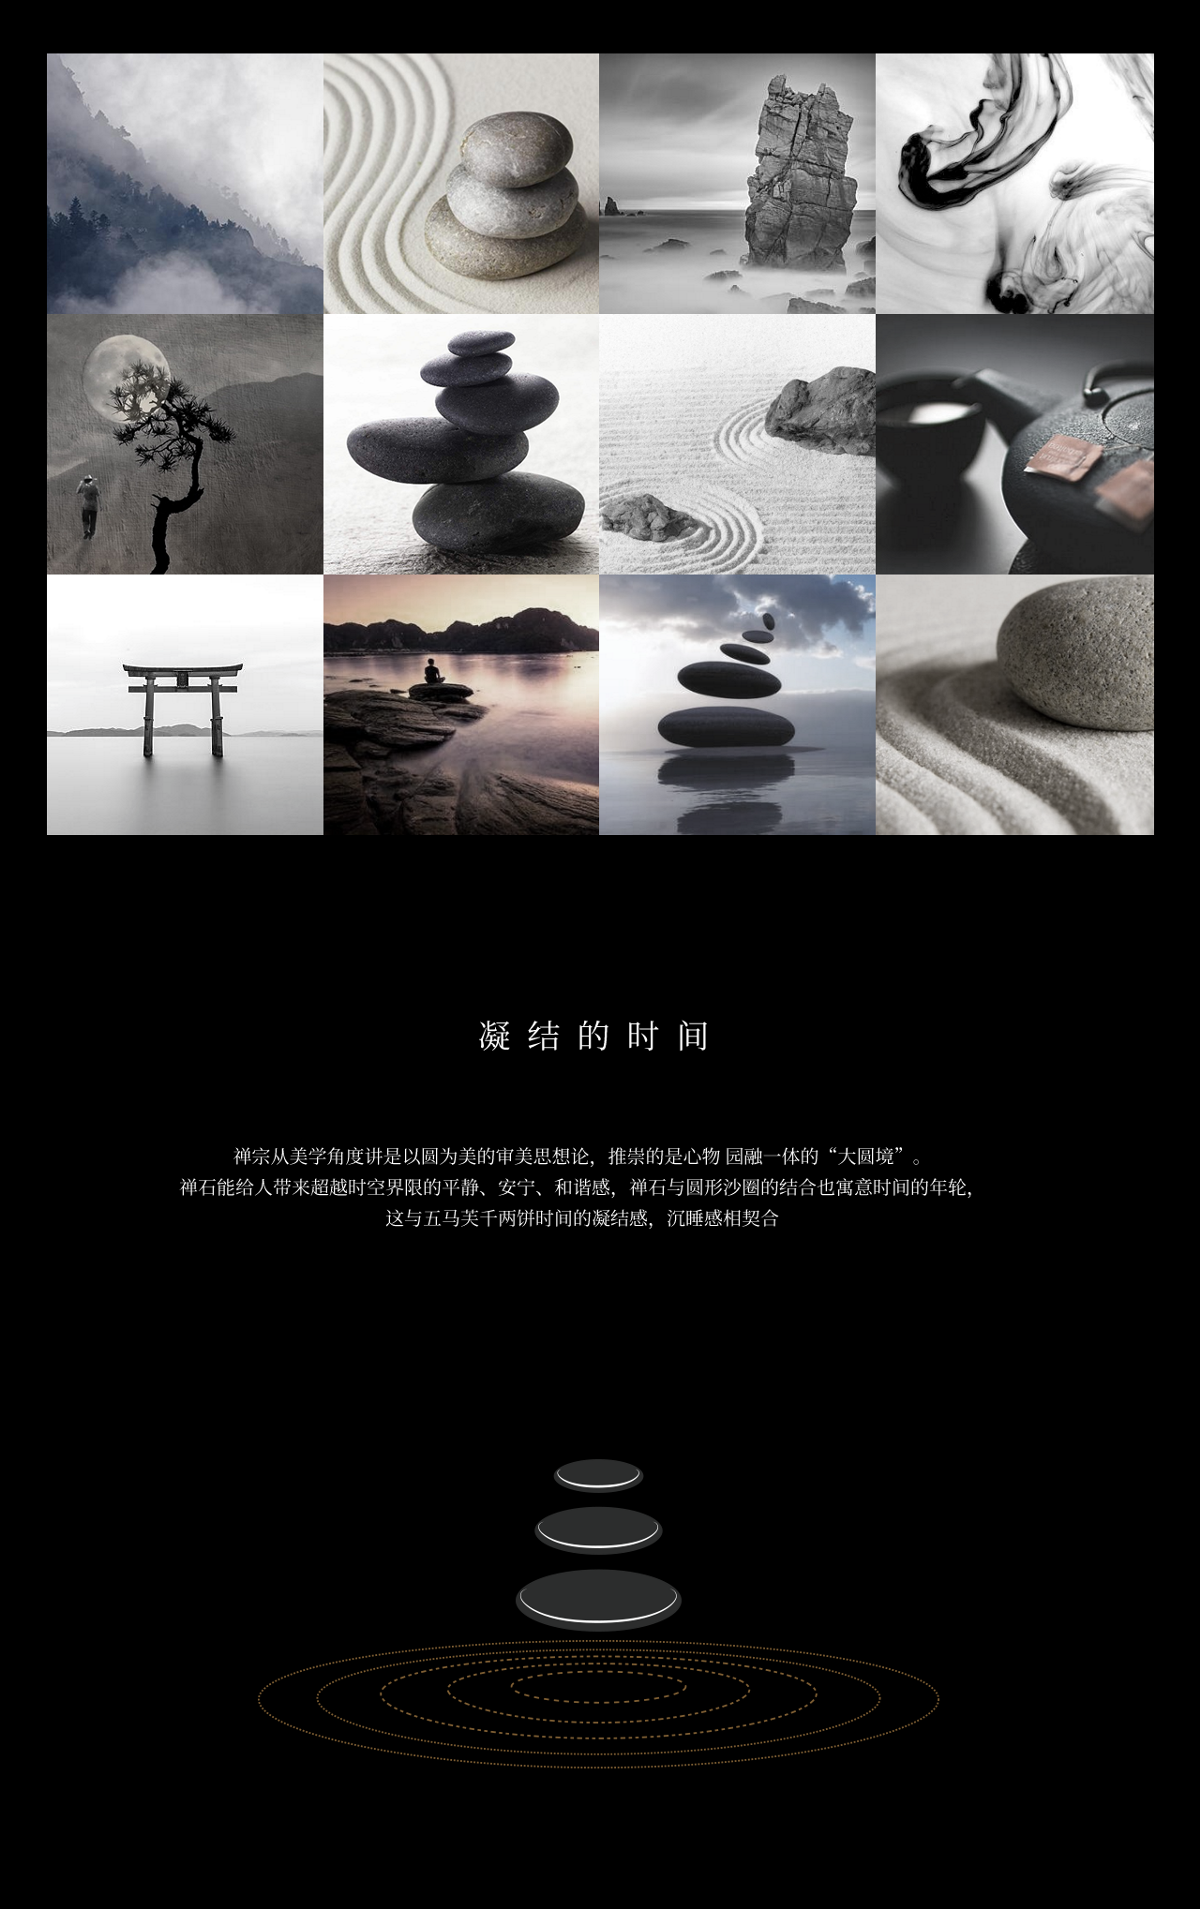 五马芙|新中式禅意千两茶茶饼黑茶茶叶包装设计| www.rufydesign.com